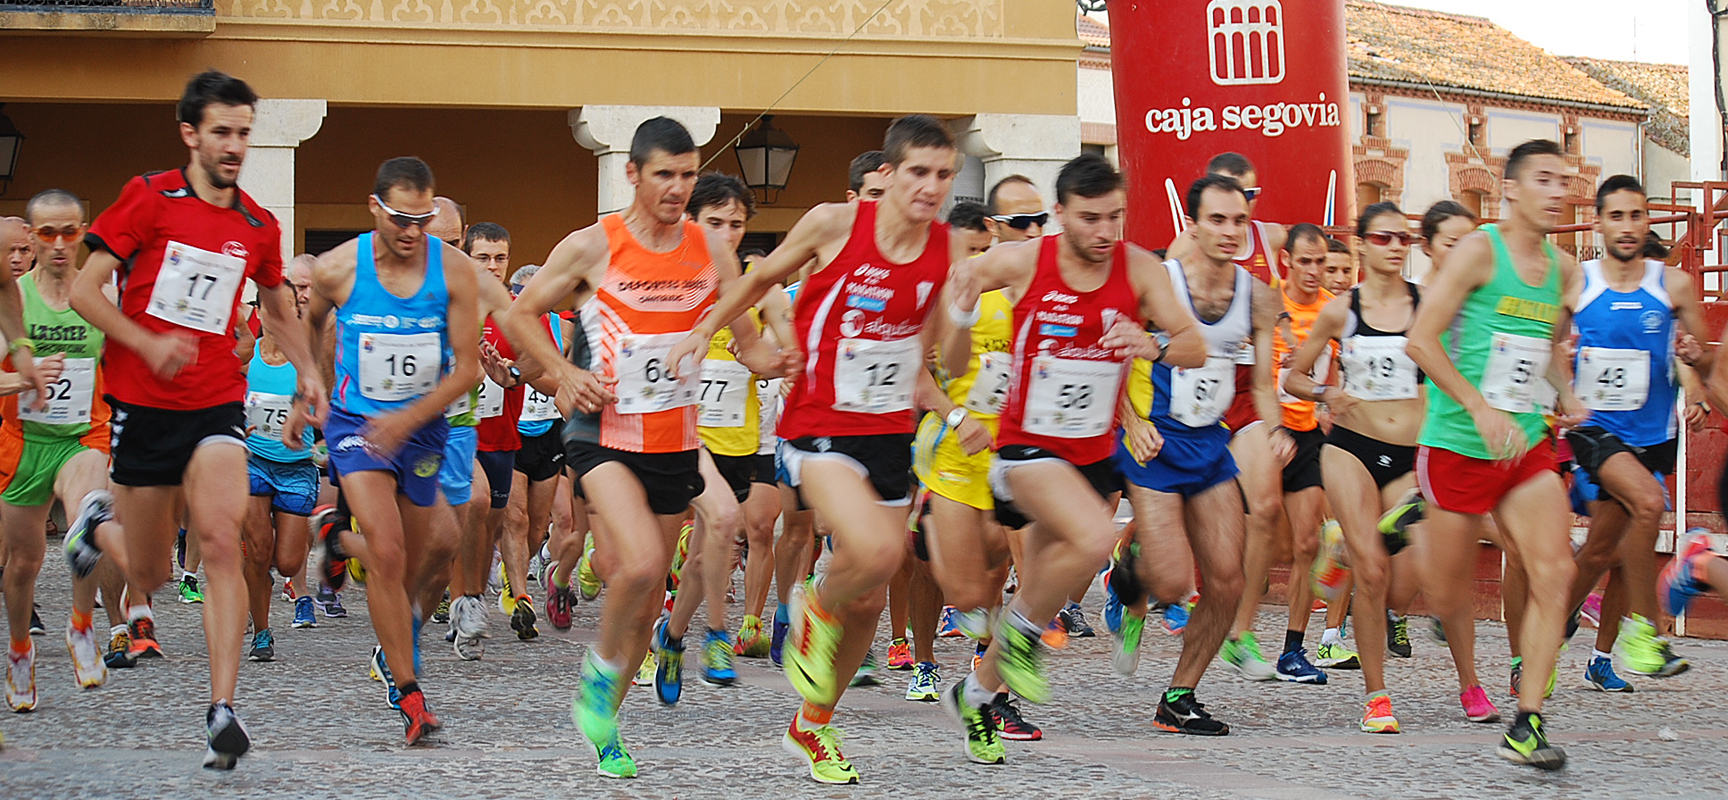 Los corredores al inicio de la prueba de Fuentepelayo.